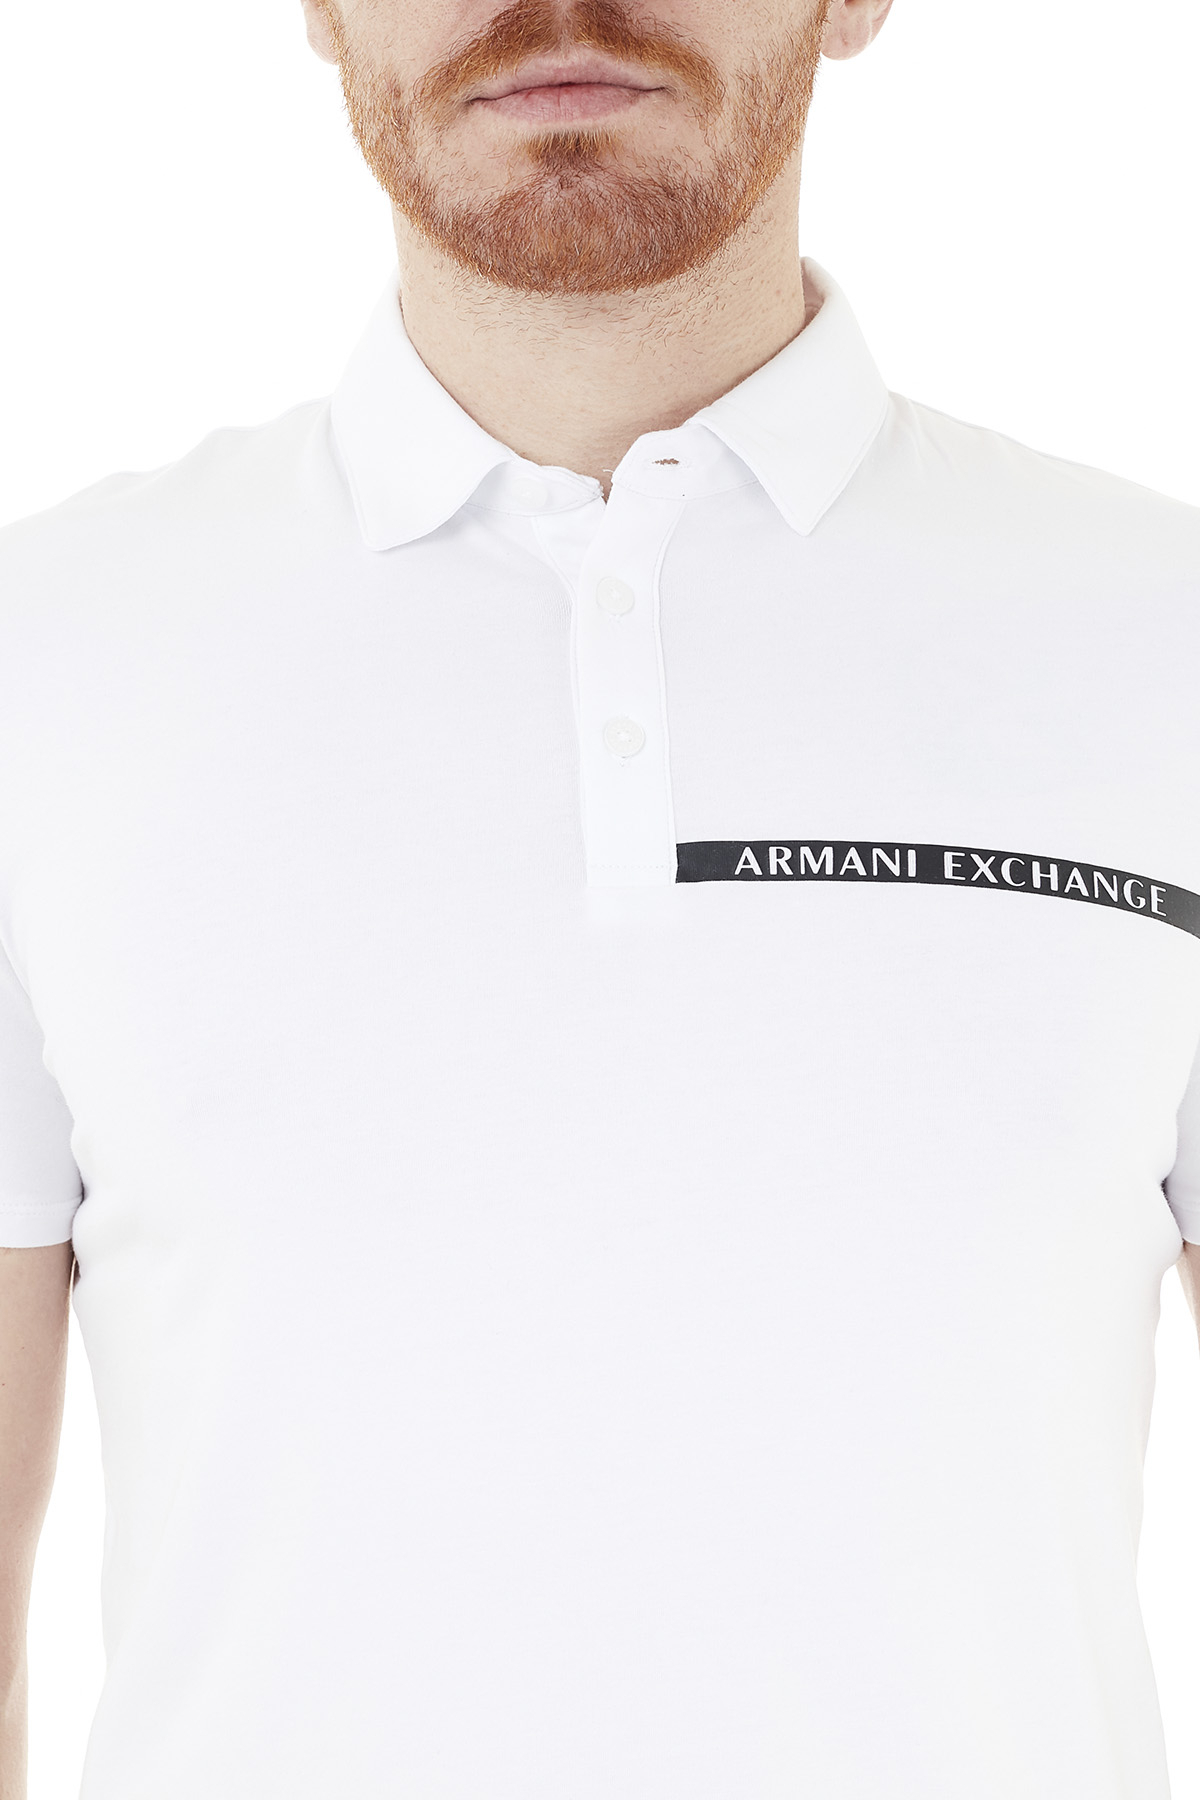 Armani Exchange Pamuklu T Shirt Erkek Polo 3KZFHA ZJE6Z 1100 BEYAZ